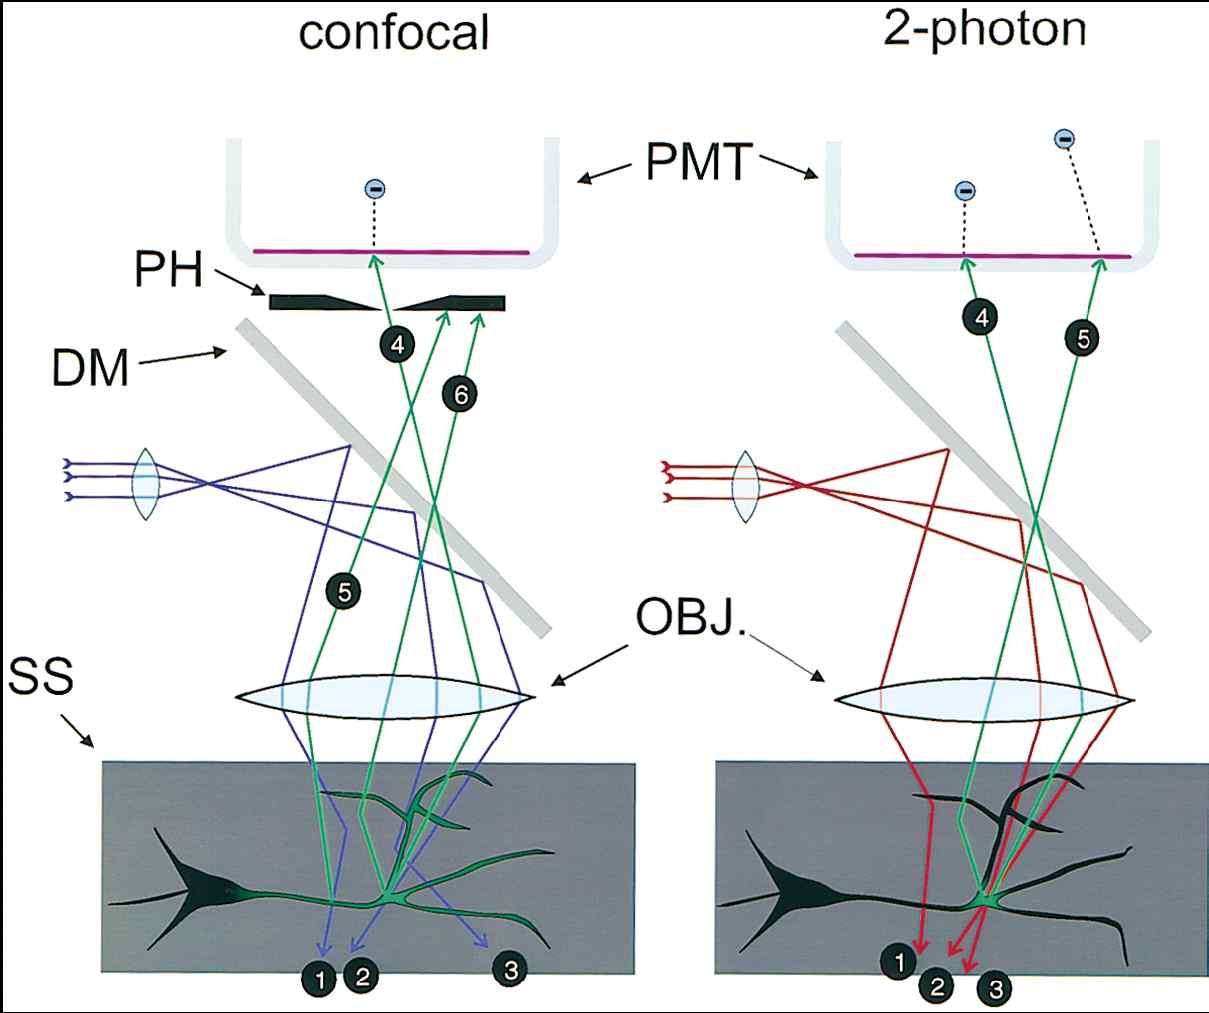 공초점 현미경과 Two photon 현미경의 비교 (W. Denk, and K. Svoboda, Neuron 18, 351-357 (1997).